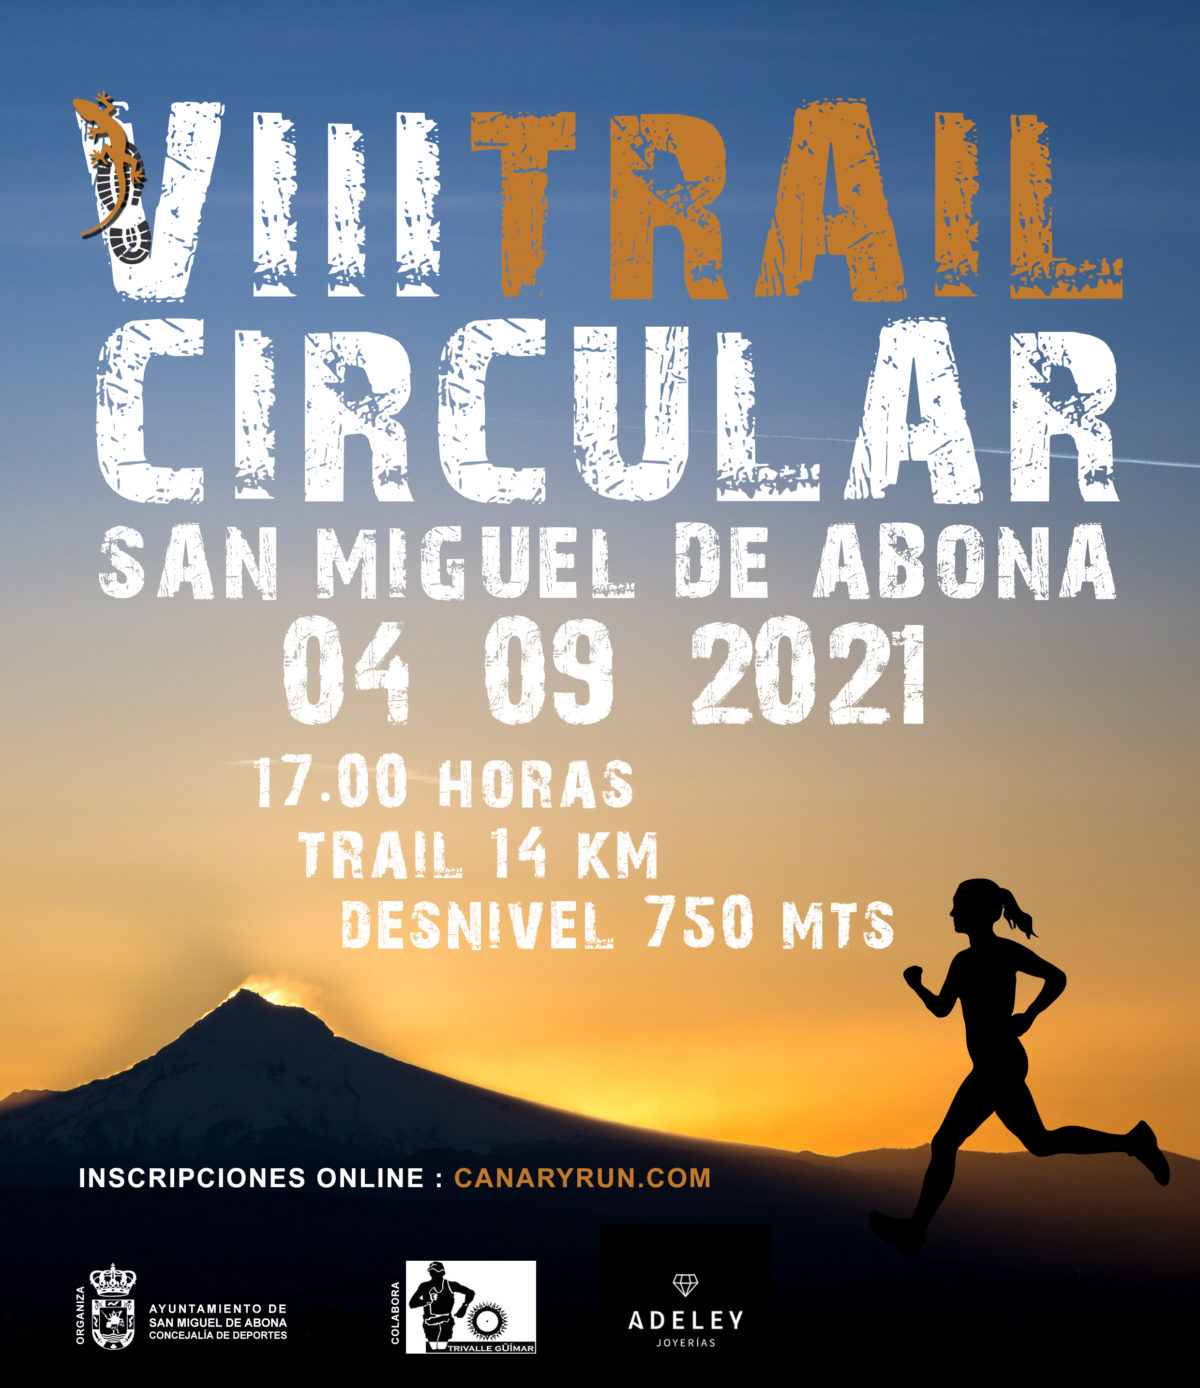 Abierto el plazo de inscripción para la VIII Trail Circular San Miguel de Abona